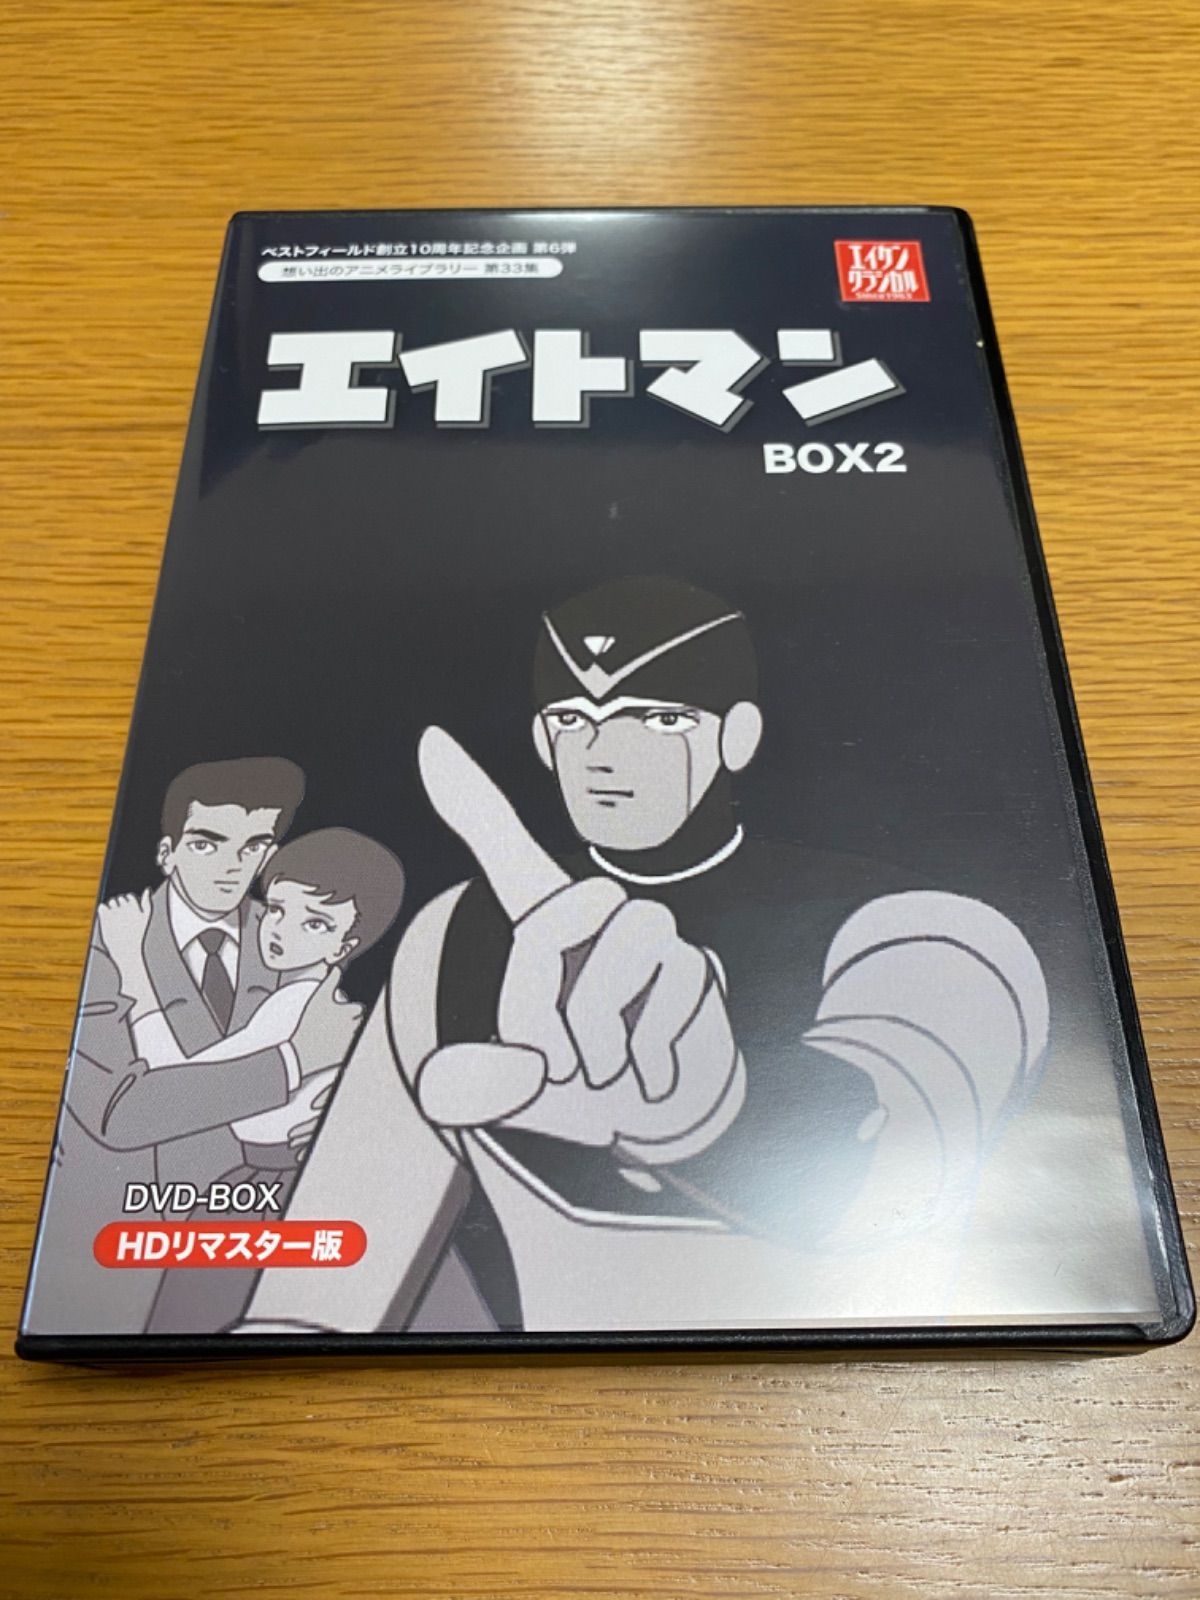 エイトマン HDリマスター DVD-BOX BOX2 アニメ 昔 想い出 - かばやんの